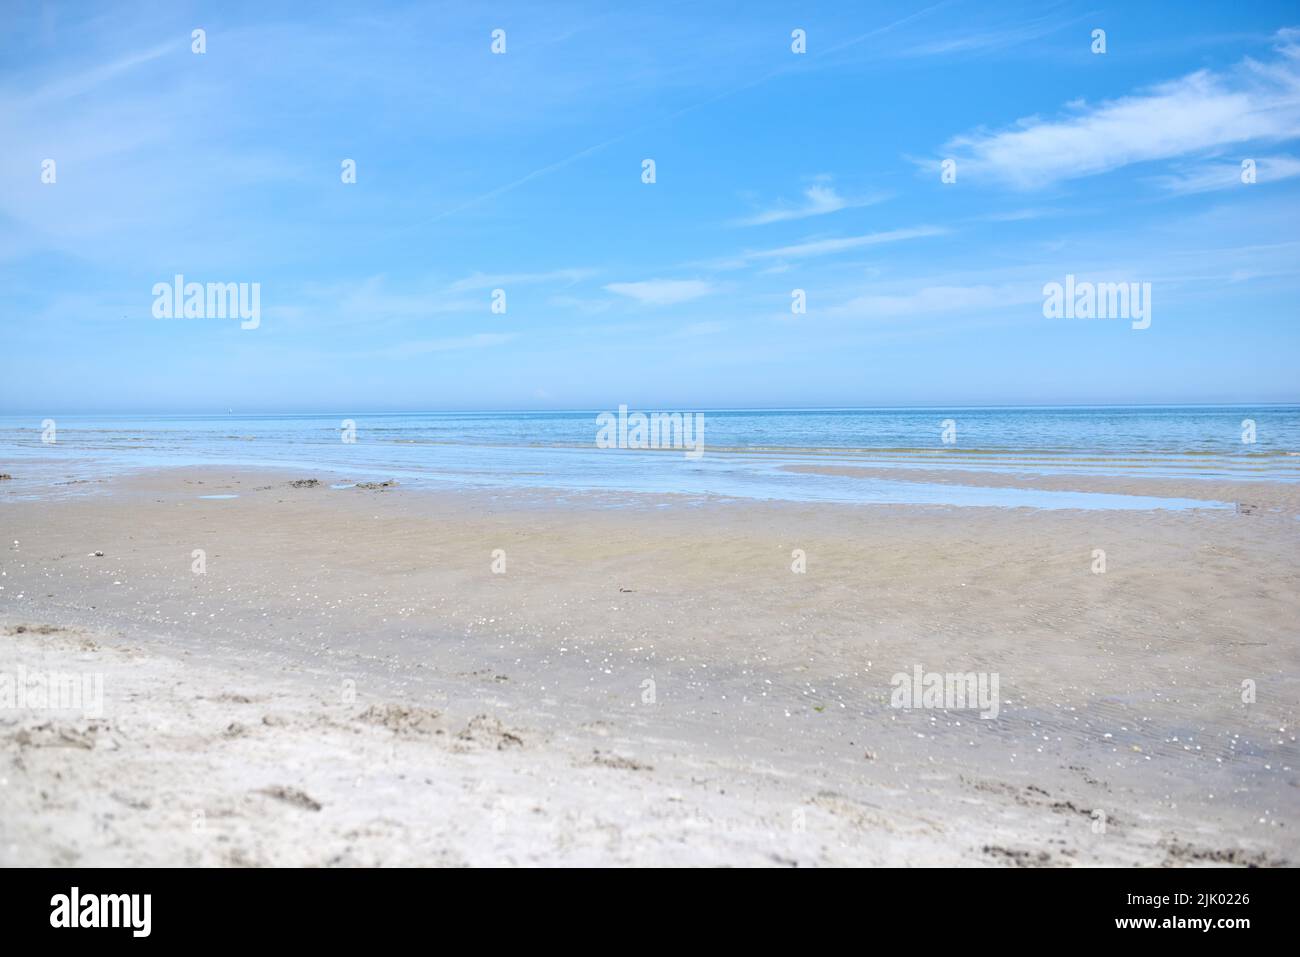 Schöner, natürlicher und landschaftlicher Blick auf den Strand und den blauen Himmel über dem Horizont mit Kopierfläche. Eine friedliche und ruhige Szene von endlosem Sandwasser Stockfoto